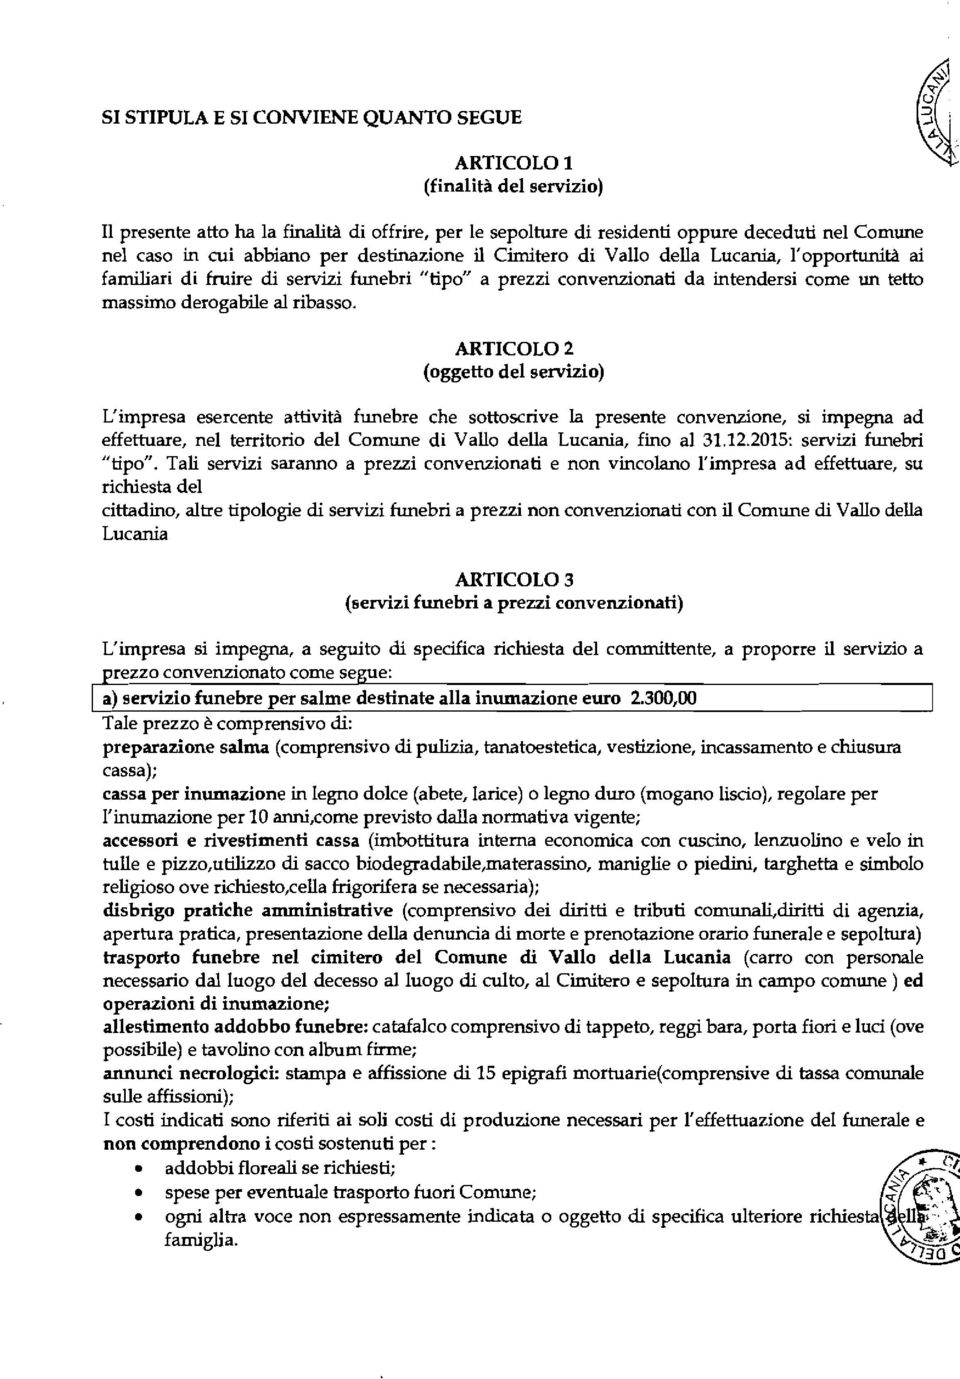 ARTCOLO 2 (oggetto del servizio) L'impresa esercente attività funebre che sottoscrive la presente convenzione, si impegna ad effettuare, nel territorio del Comune di Vallo della Lucania, fino al 31.